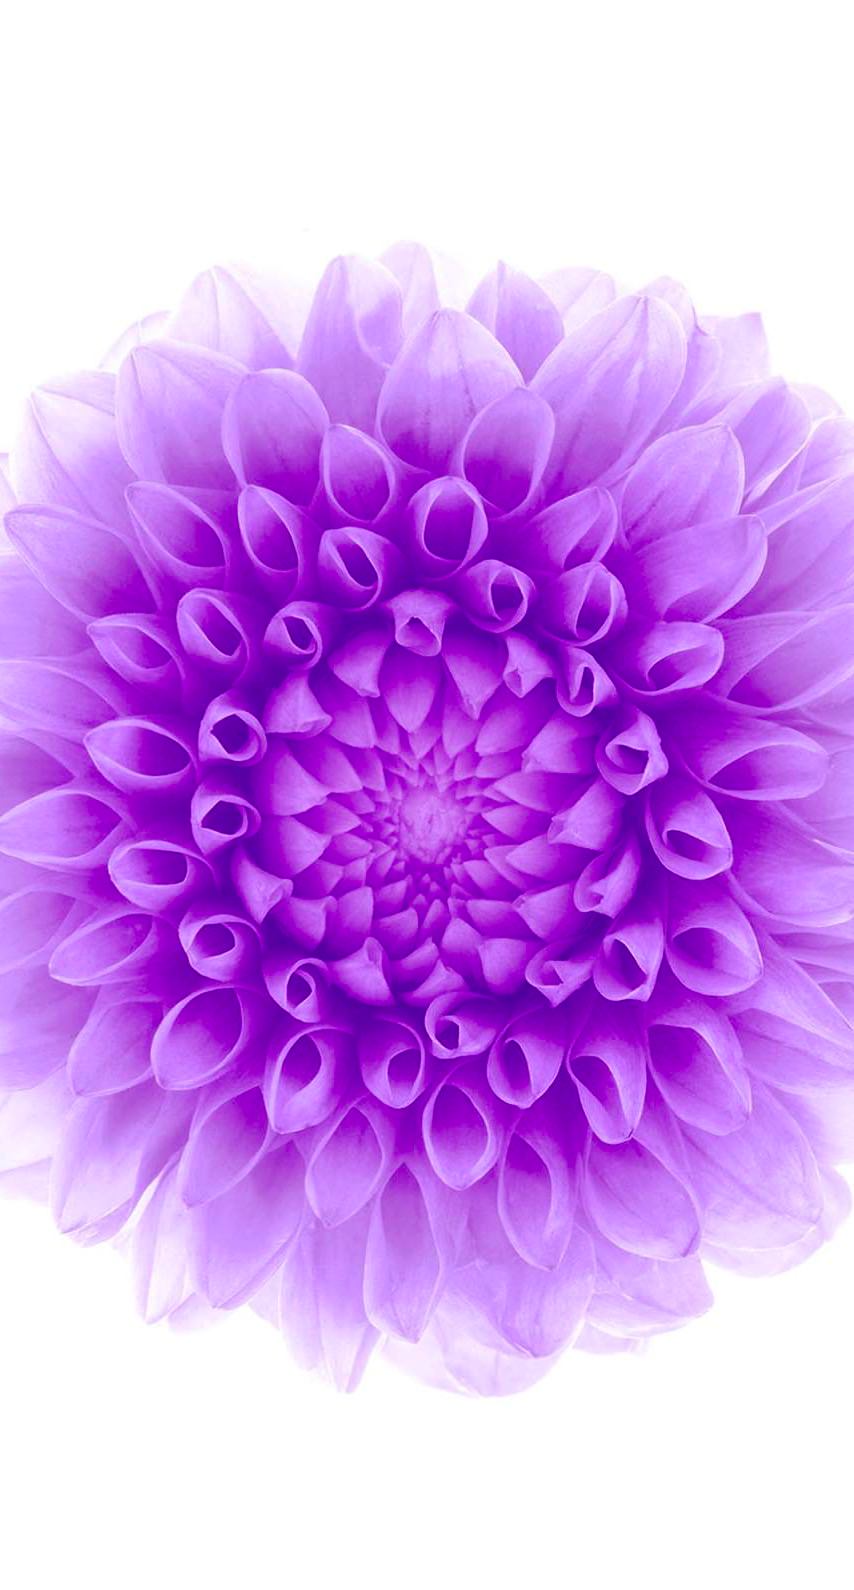 ディズニー画像ランド 最新のhd紫 花 壁紙 Iphone